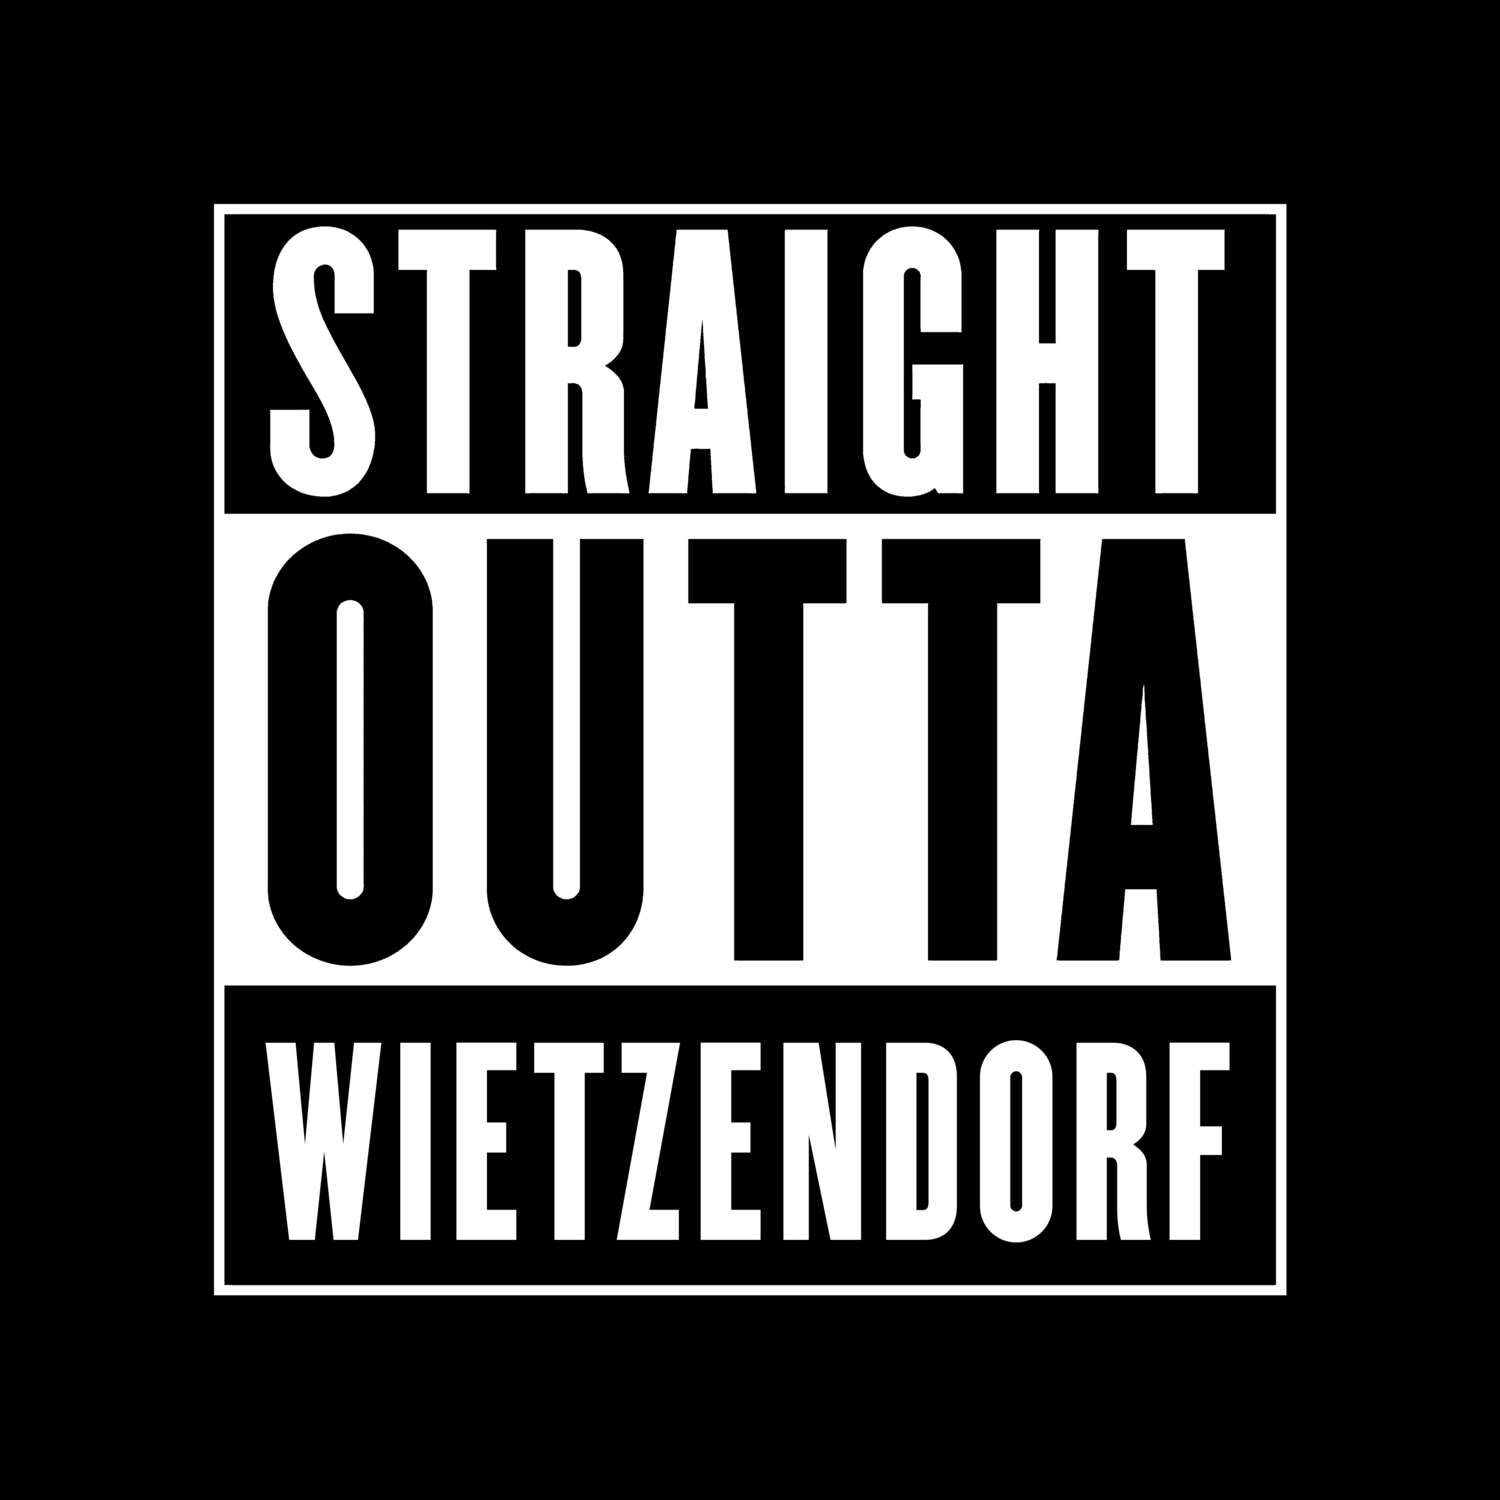 Wietzendorf T-Shirt »Straight Outta«